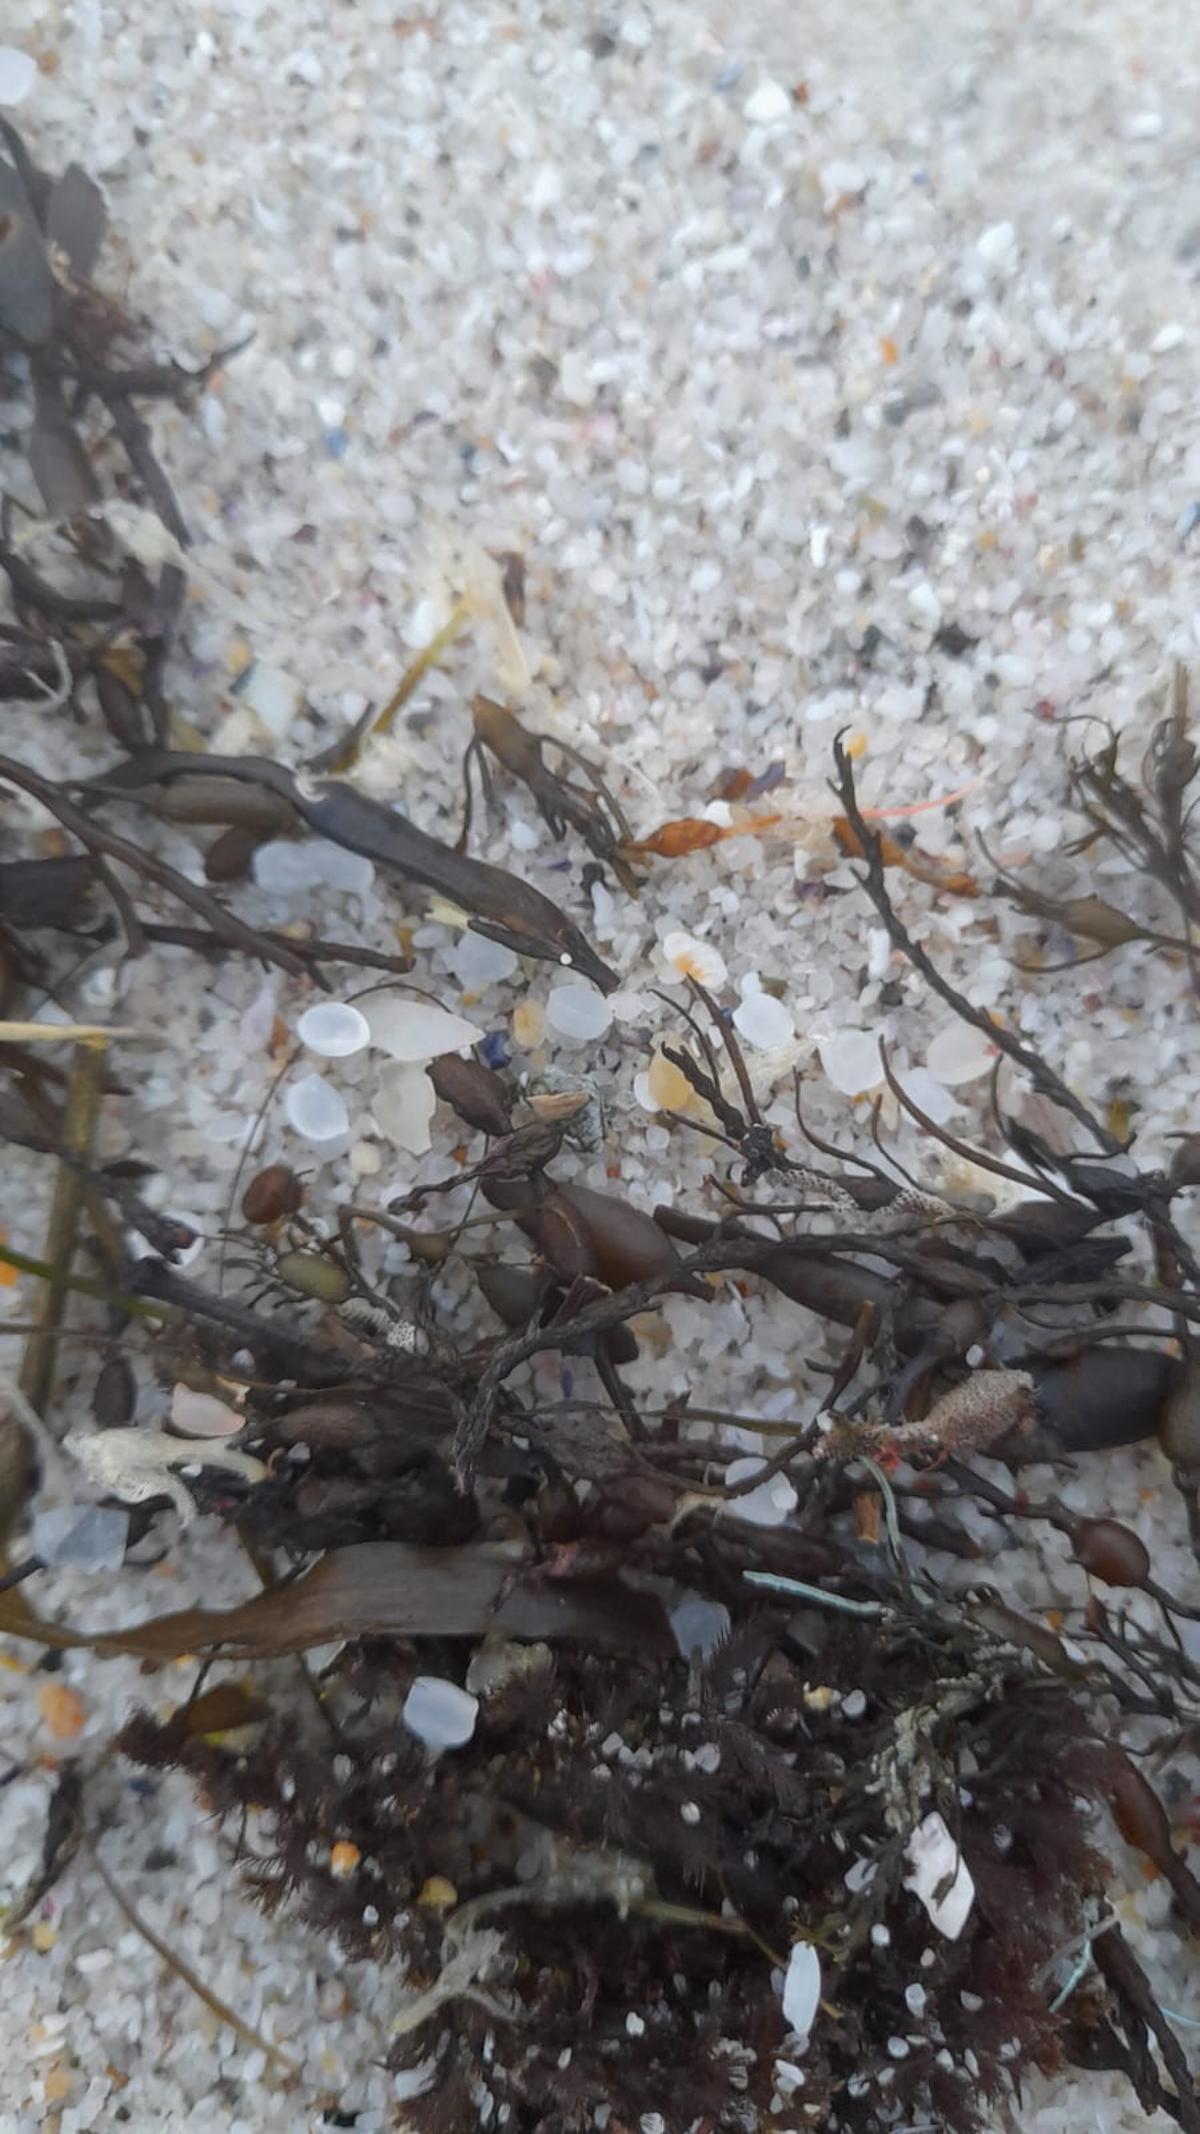 Bolitas plásticas entre algas en la playa de Area dos Cans en Ons.